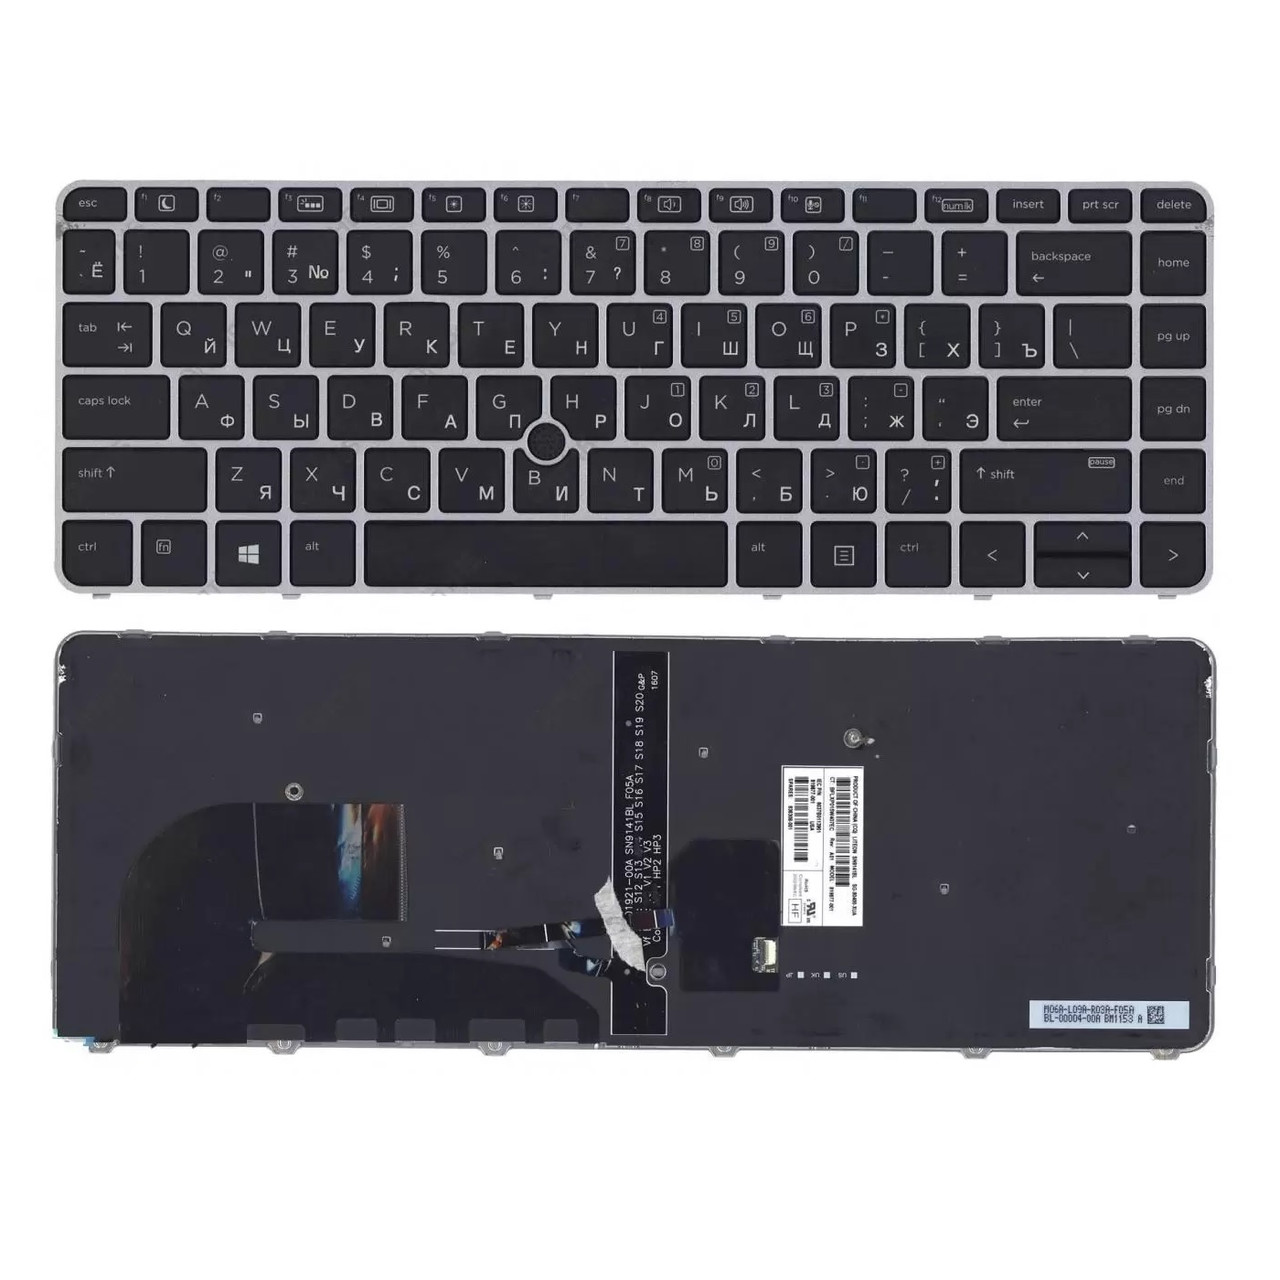 Клавиатура для ноутбука HP EliteBook 745 G3, 745 G4, 840 G3, 840 G4, черная, рамка серебряная, с джойстиком и